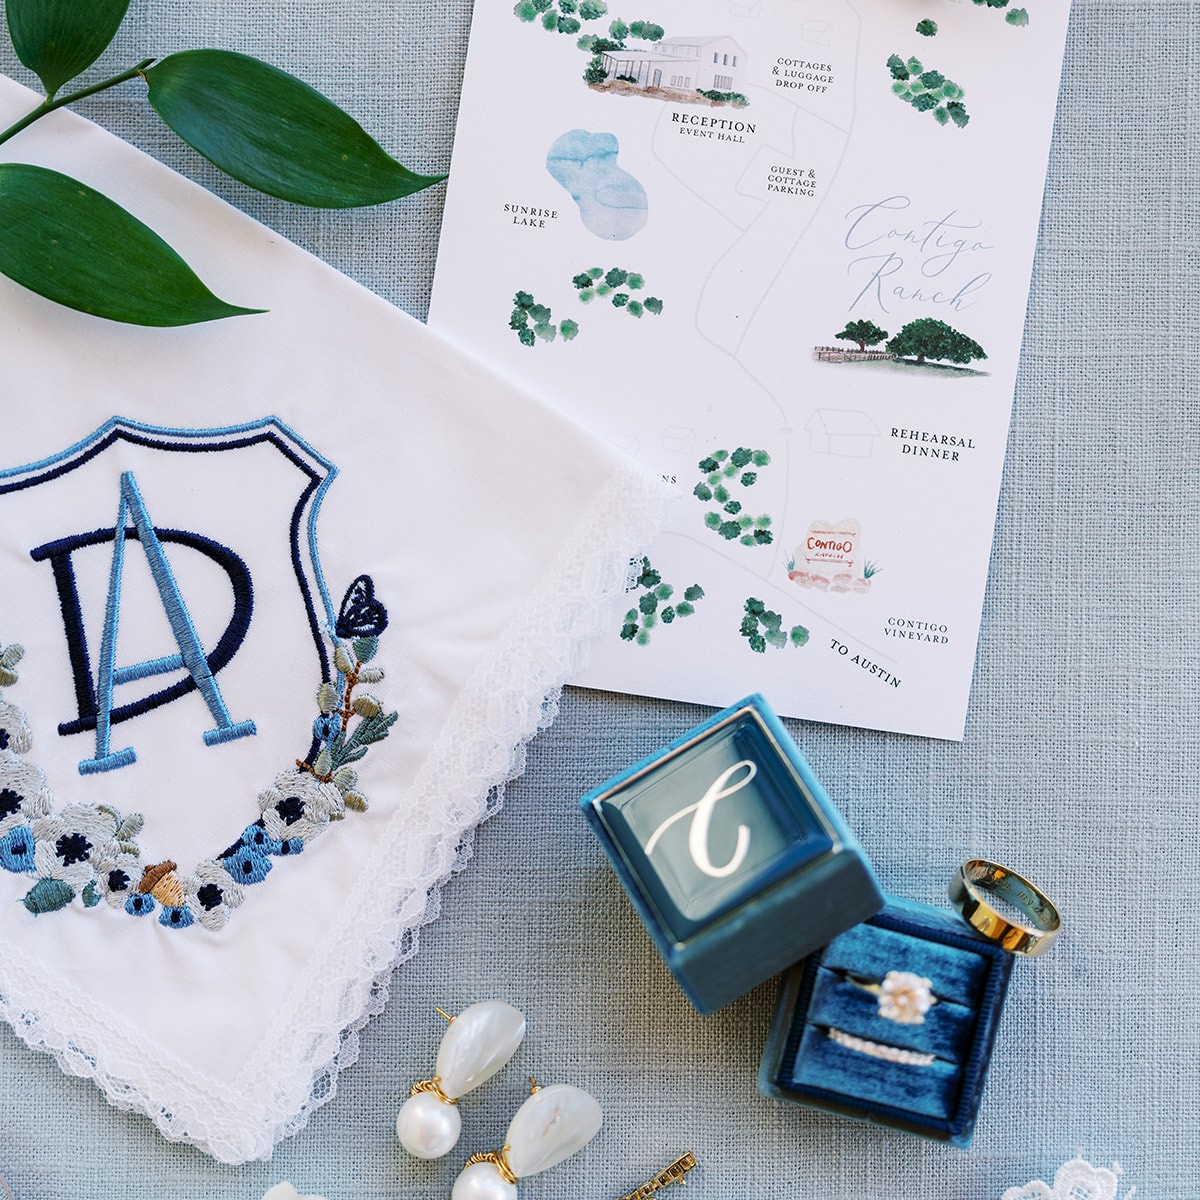 Custom embroidered wedding crest handkerchief using crest designed by Papergarten.